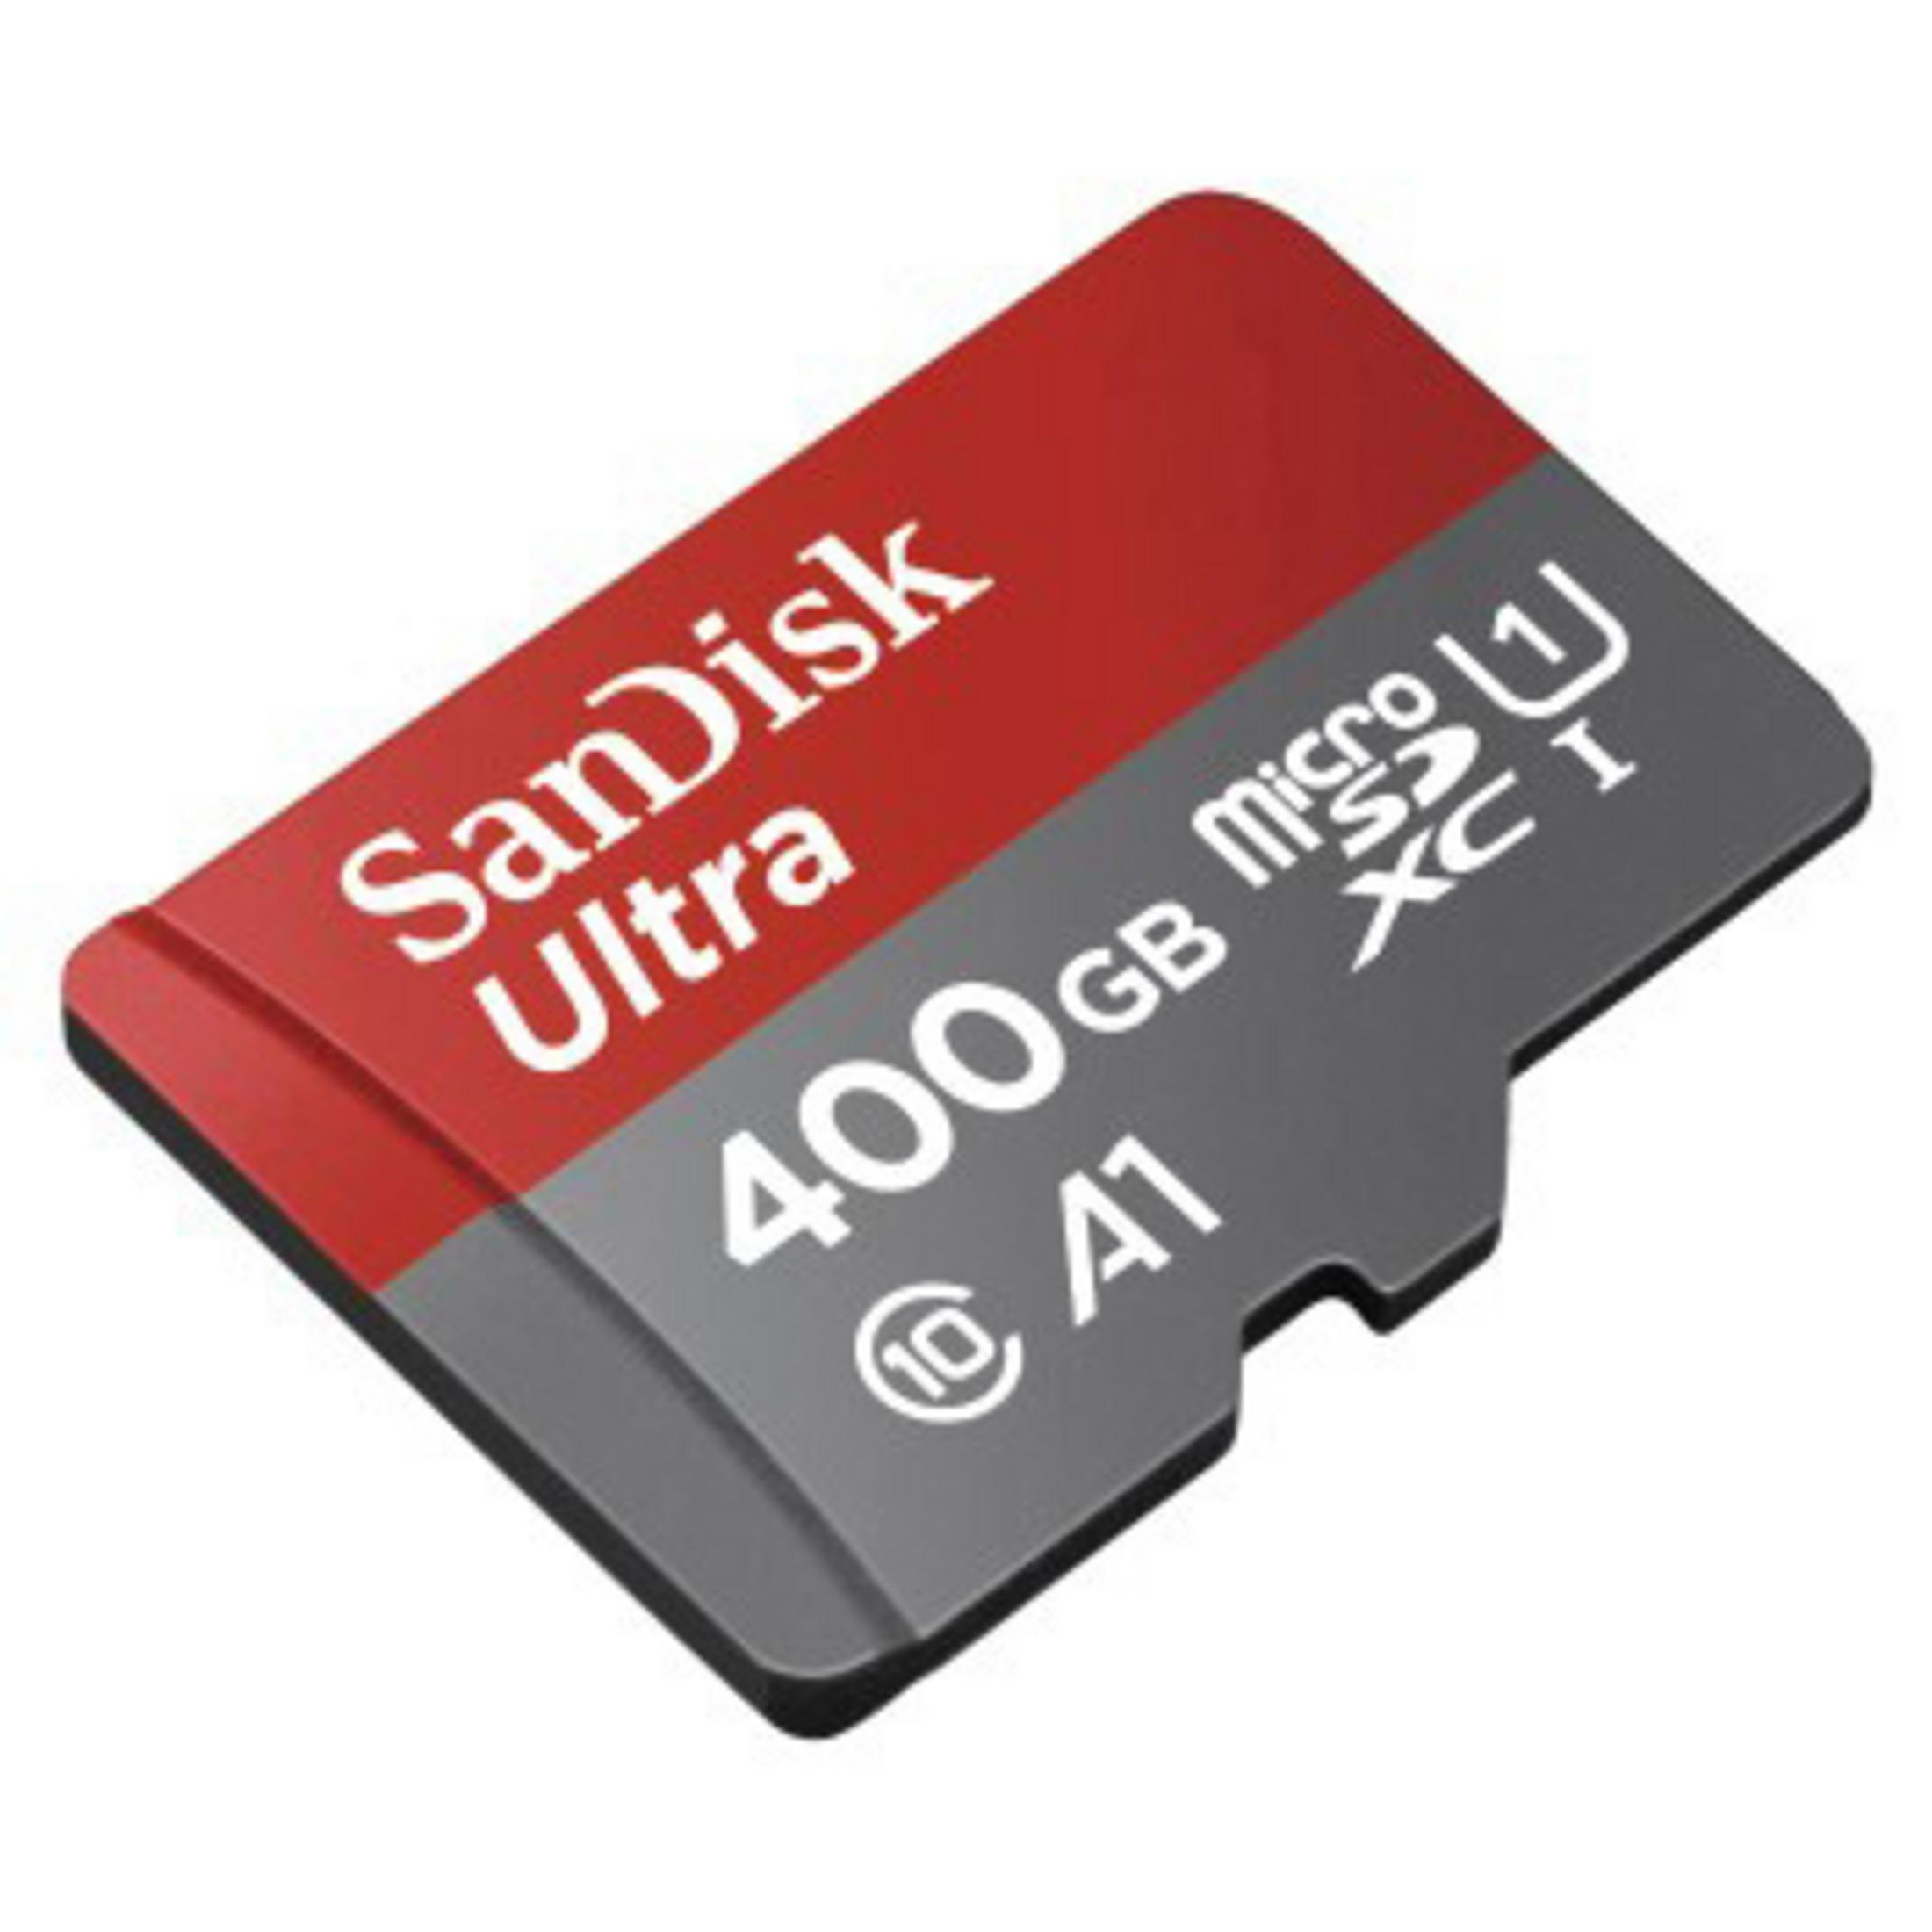 SANDISK 173478 MSDXC Micro-SDXC MB/s GB, 100 ULT. Speicherkarte, 400GB (100MB/S,UH, 400